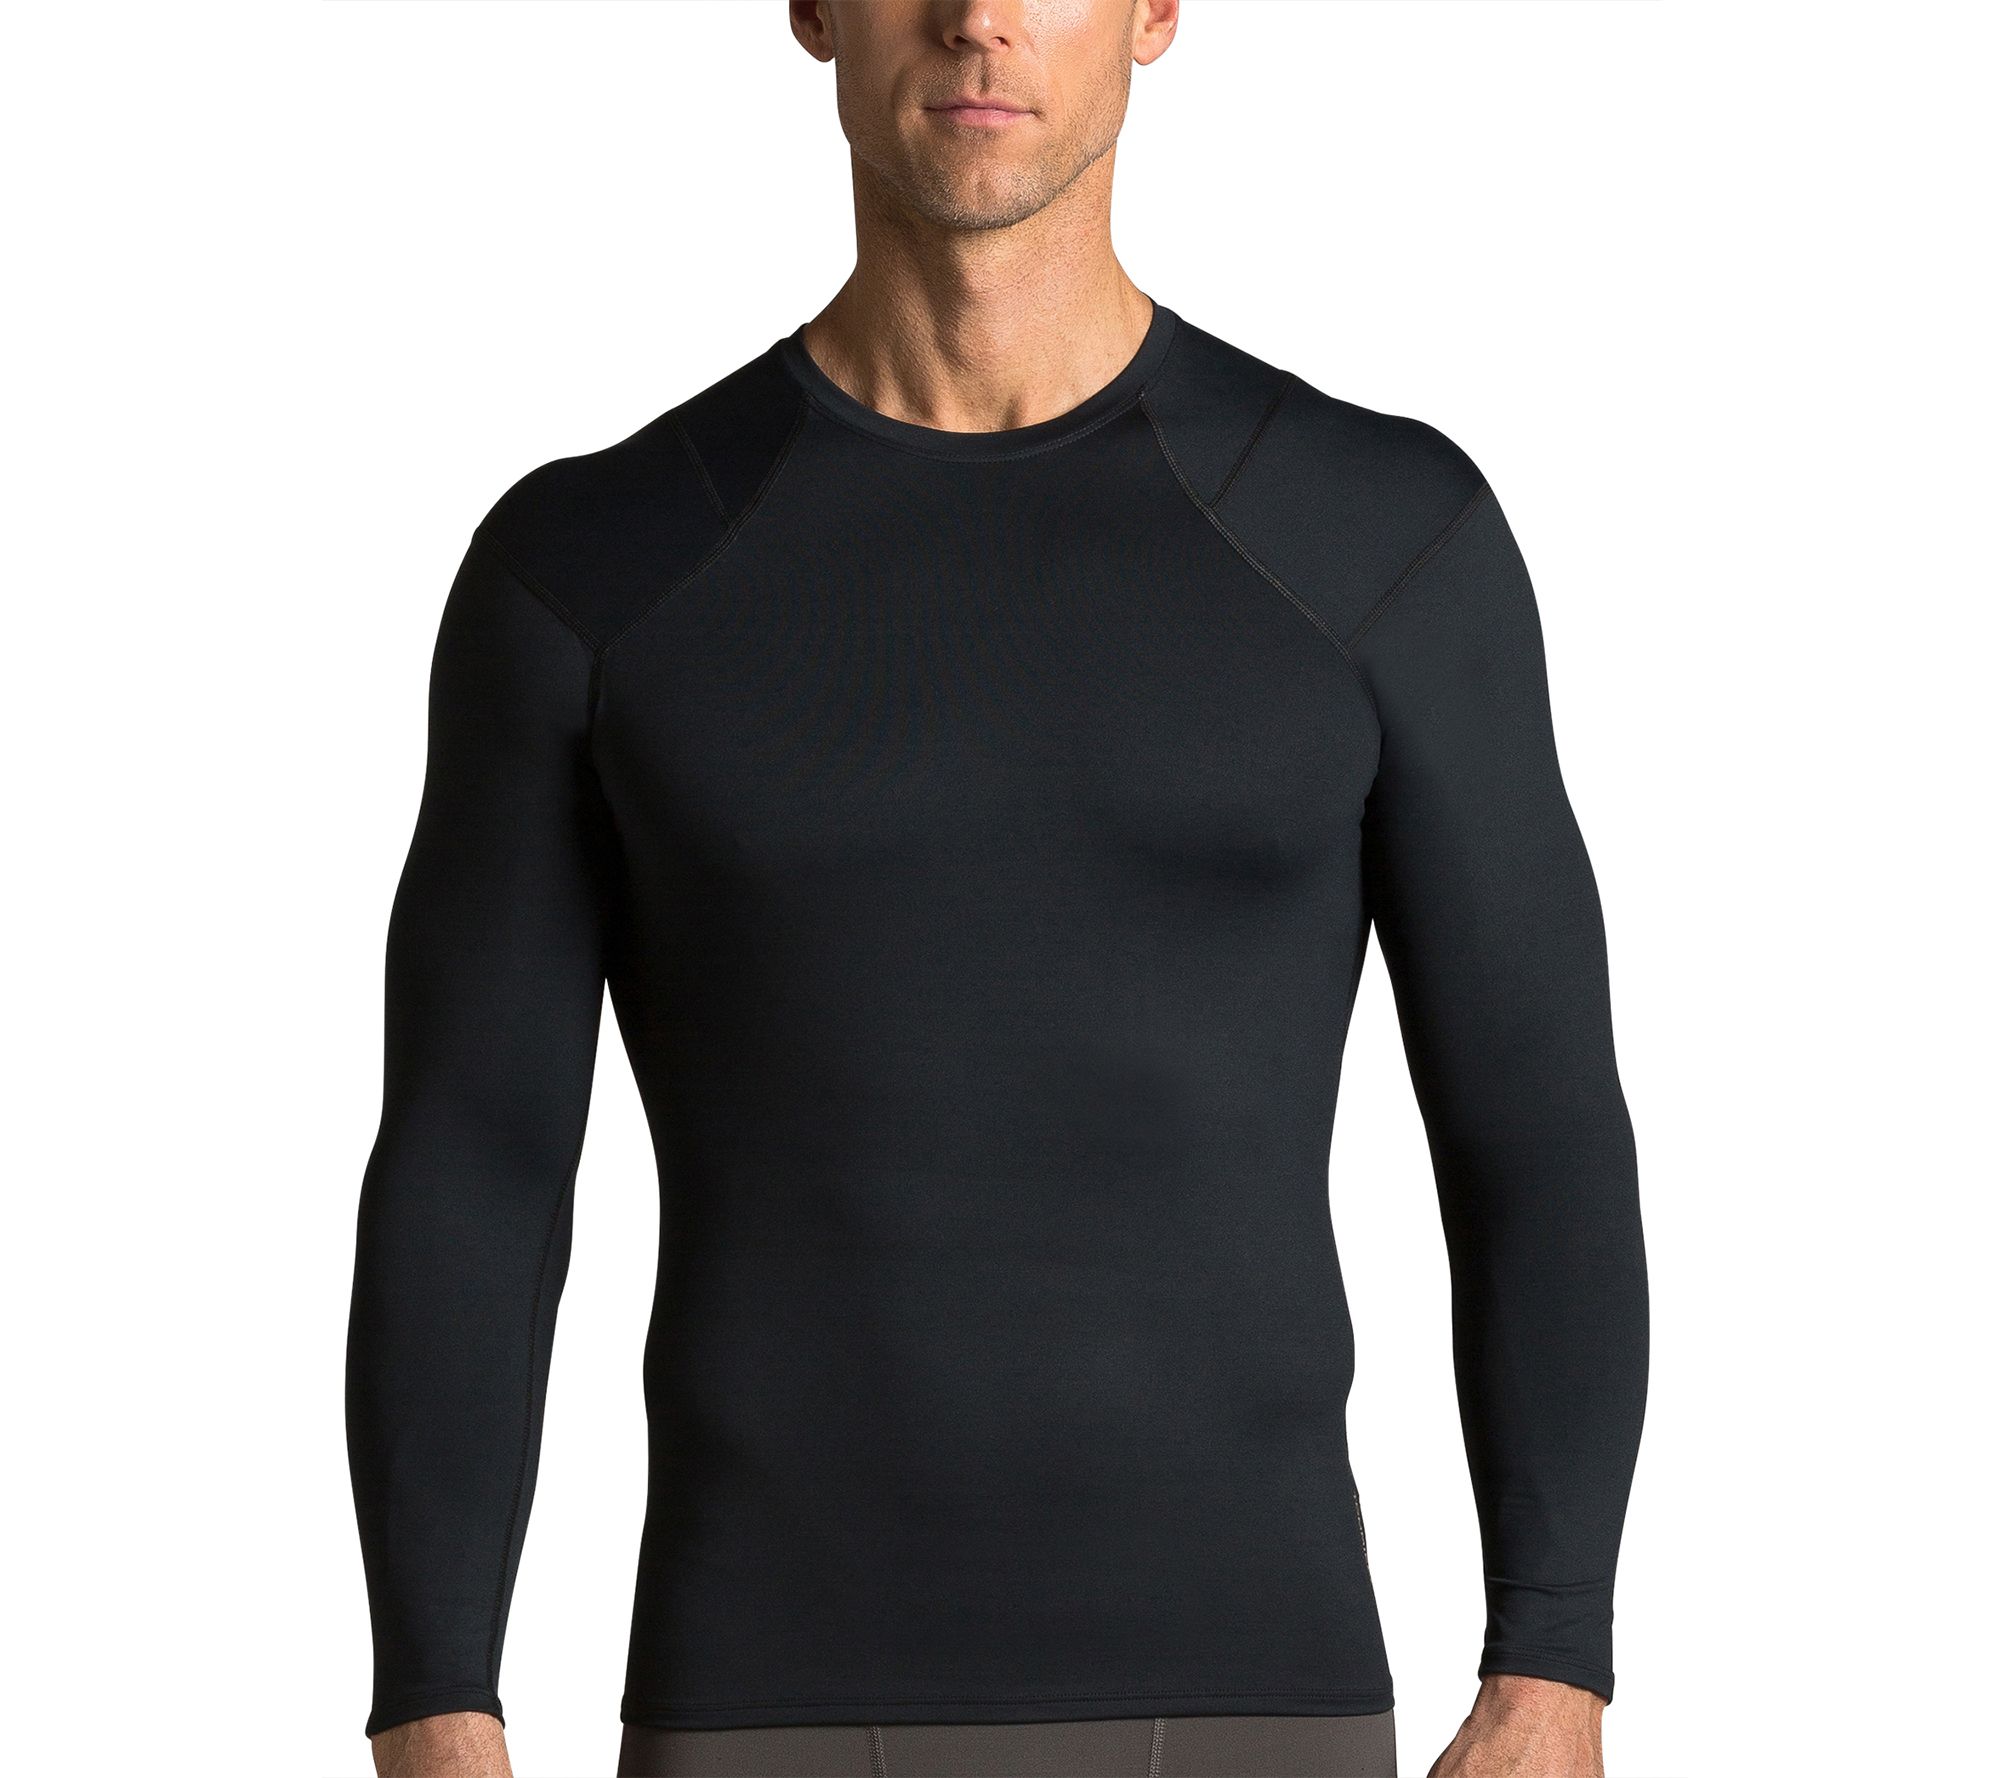 Shoulder Support Shirt | Men's Long Sleeve